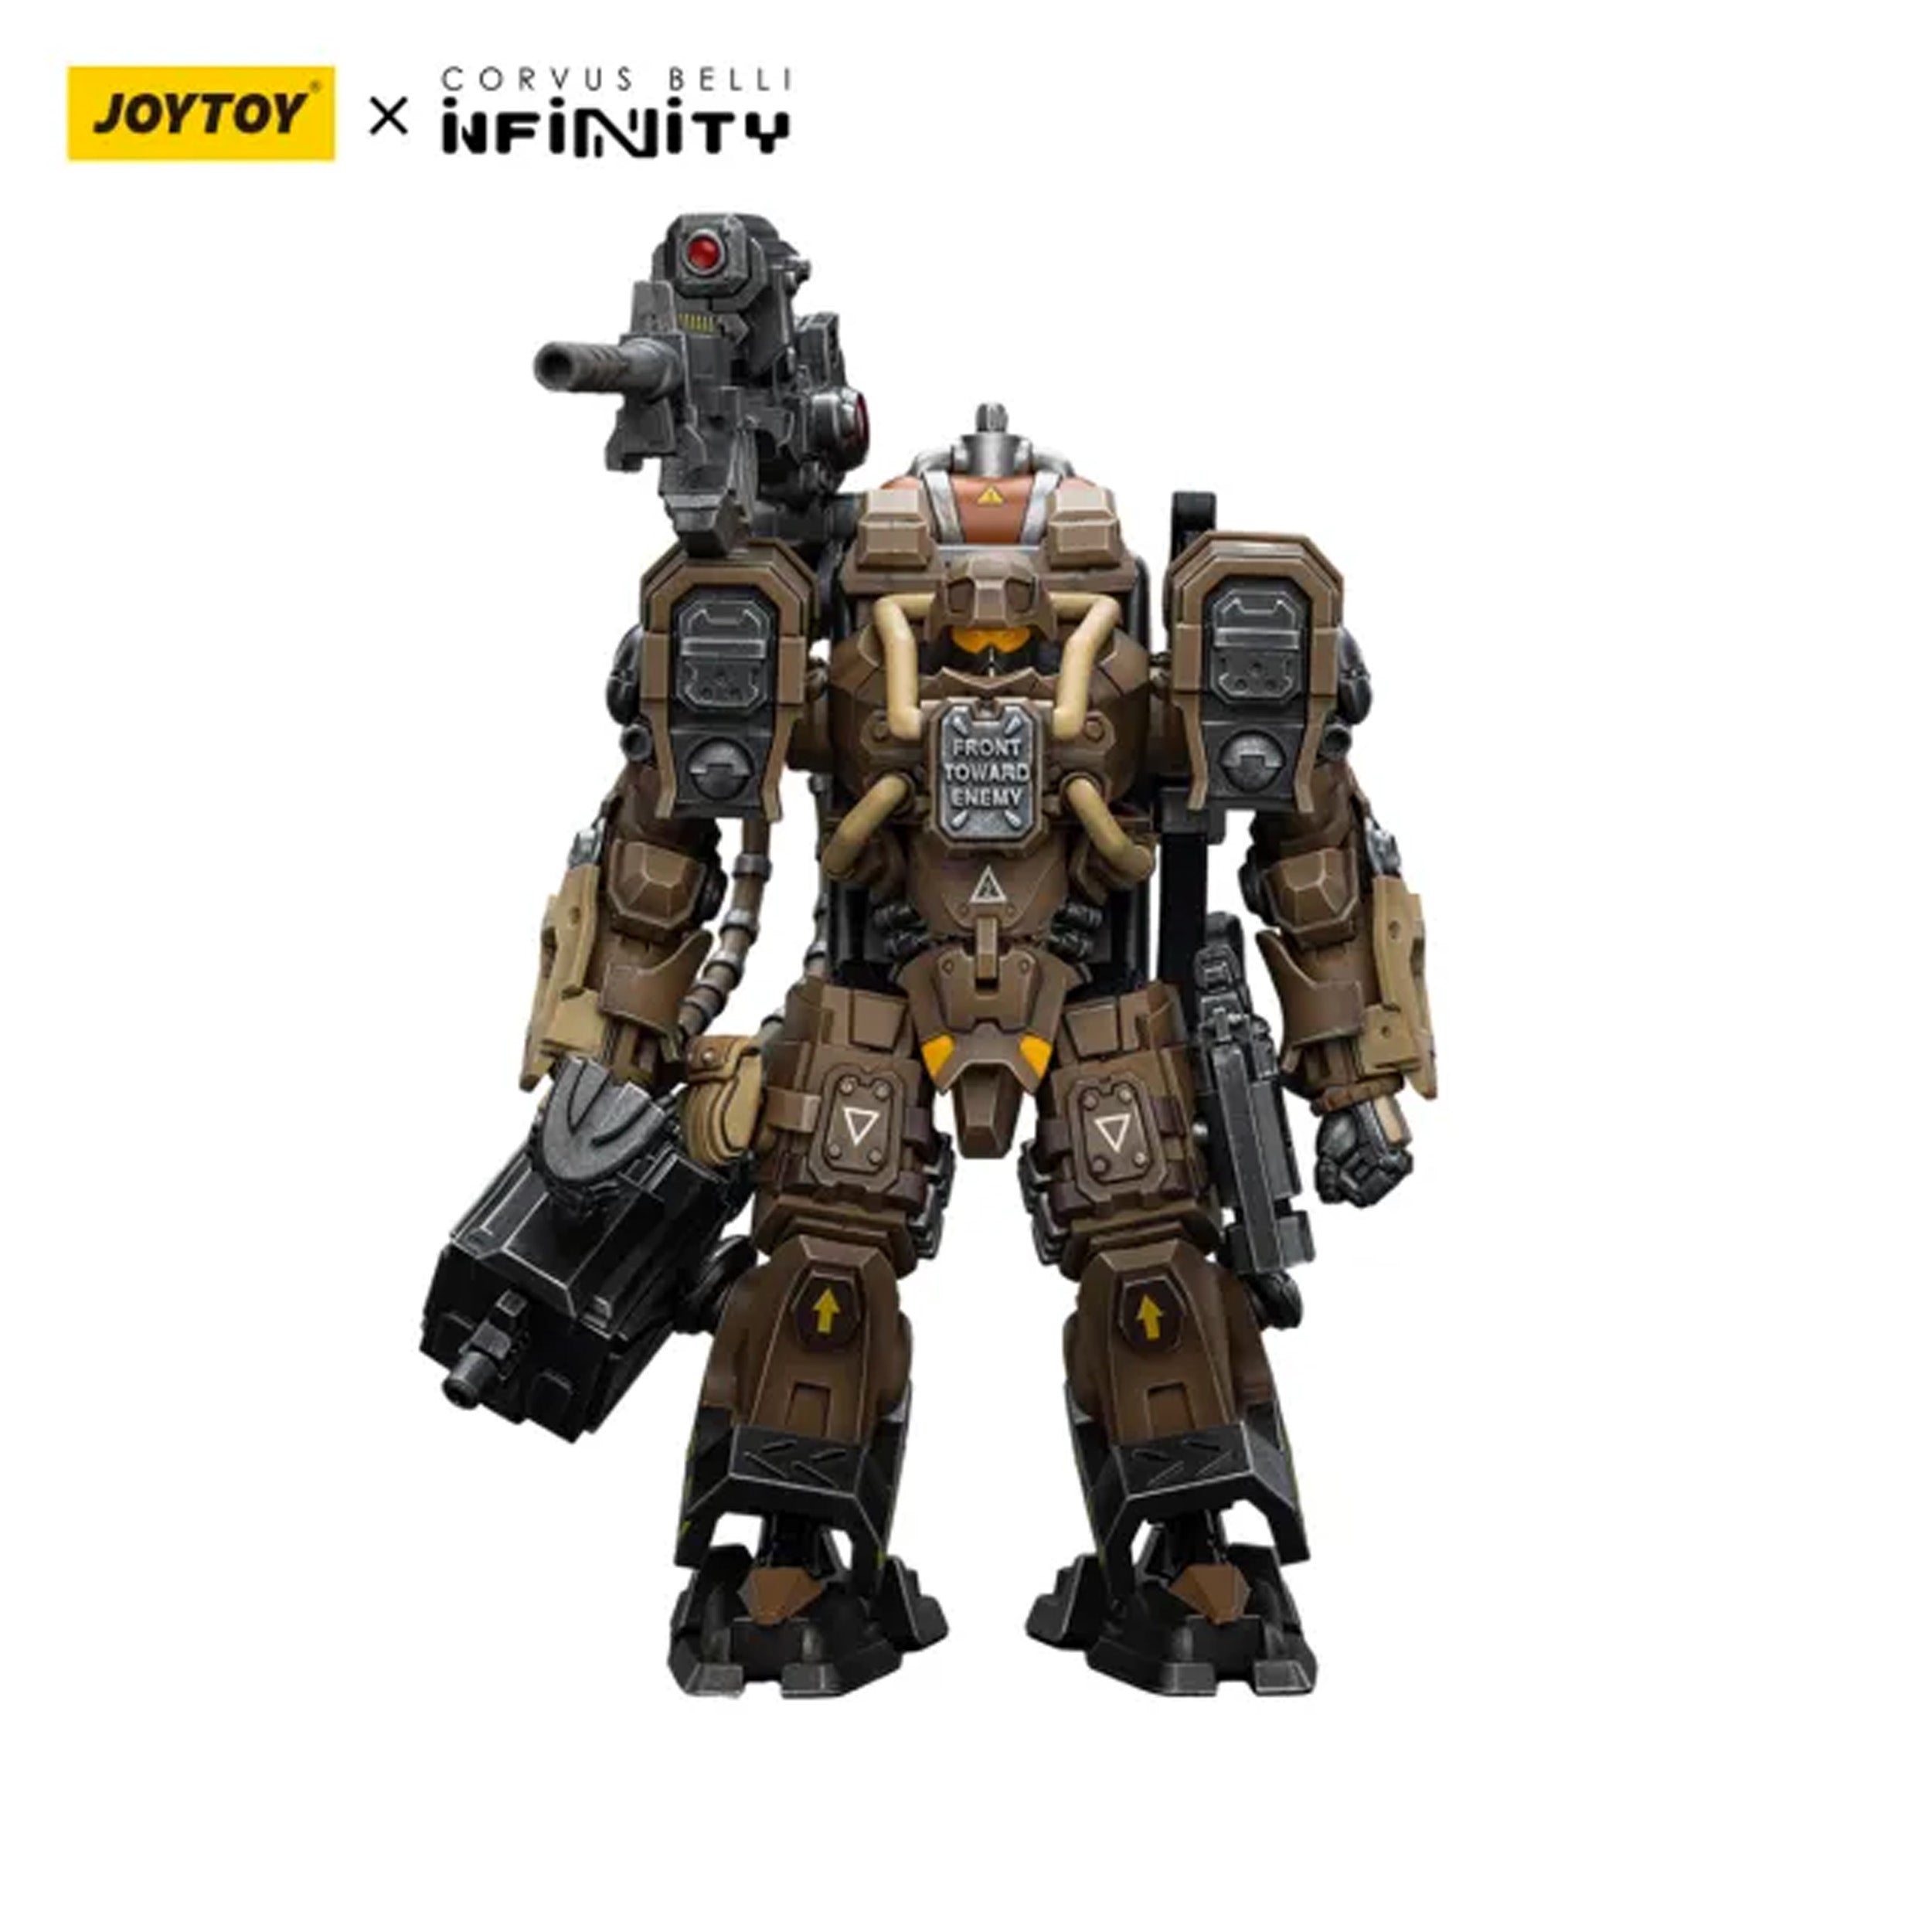 Joy Toy - JT9763 - Infinity (Corvus Belli) - Ariadna - Blackjacks, 10th Heavy Ranger Bat. (T2 Sniper) (1/18 Scale) - Marvelous Toys